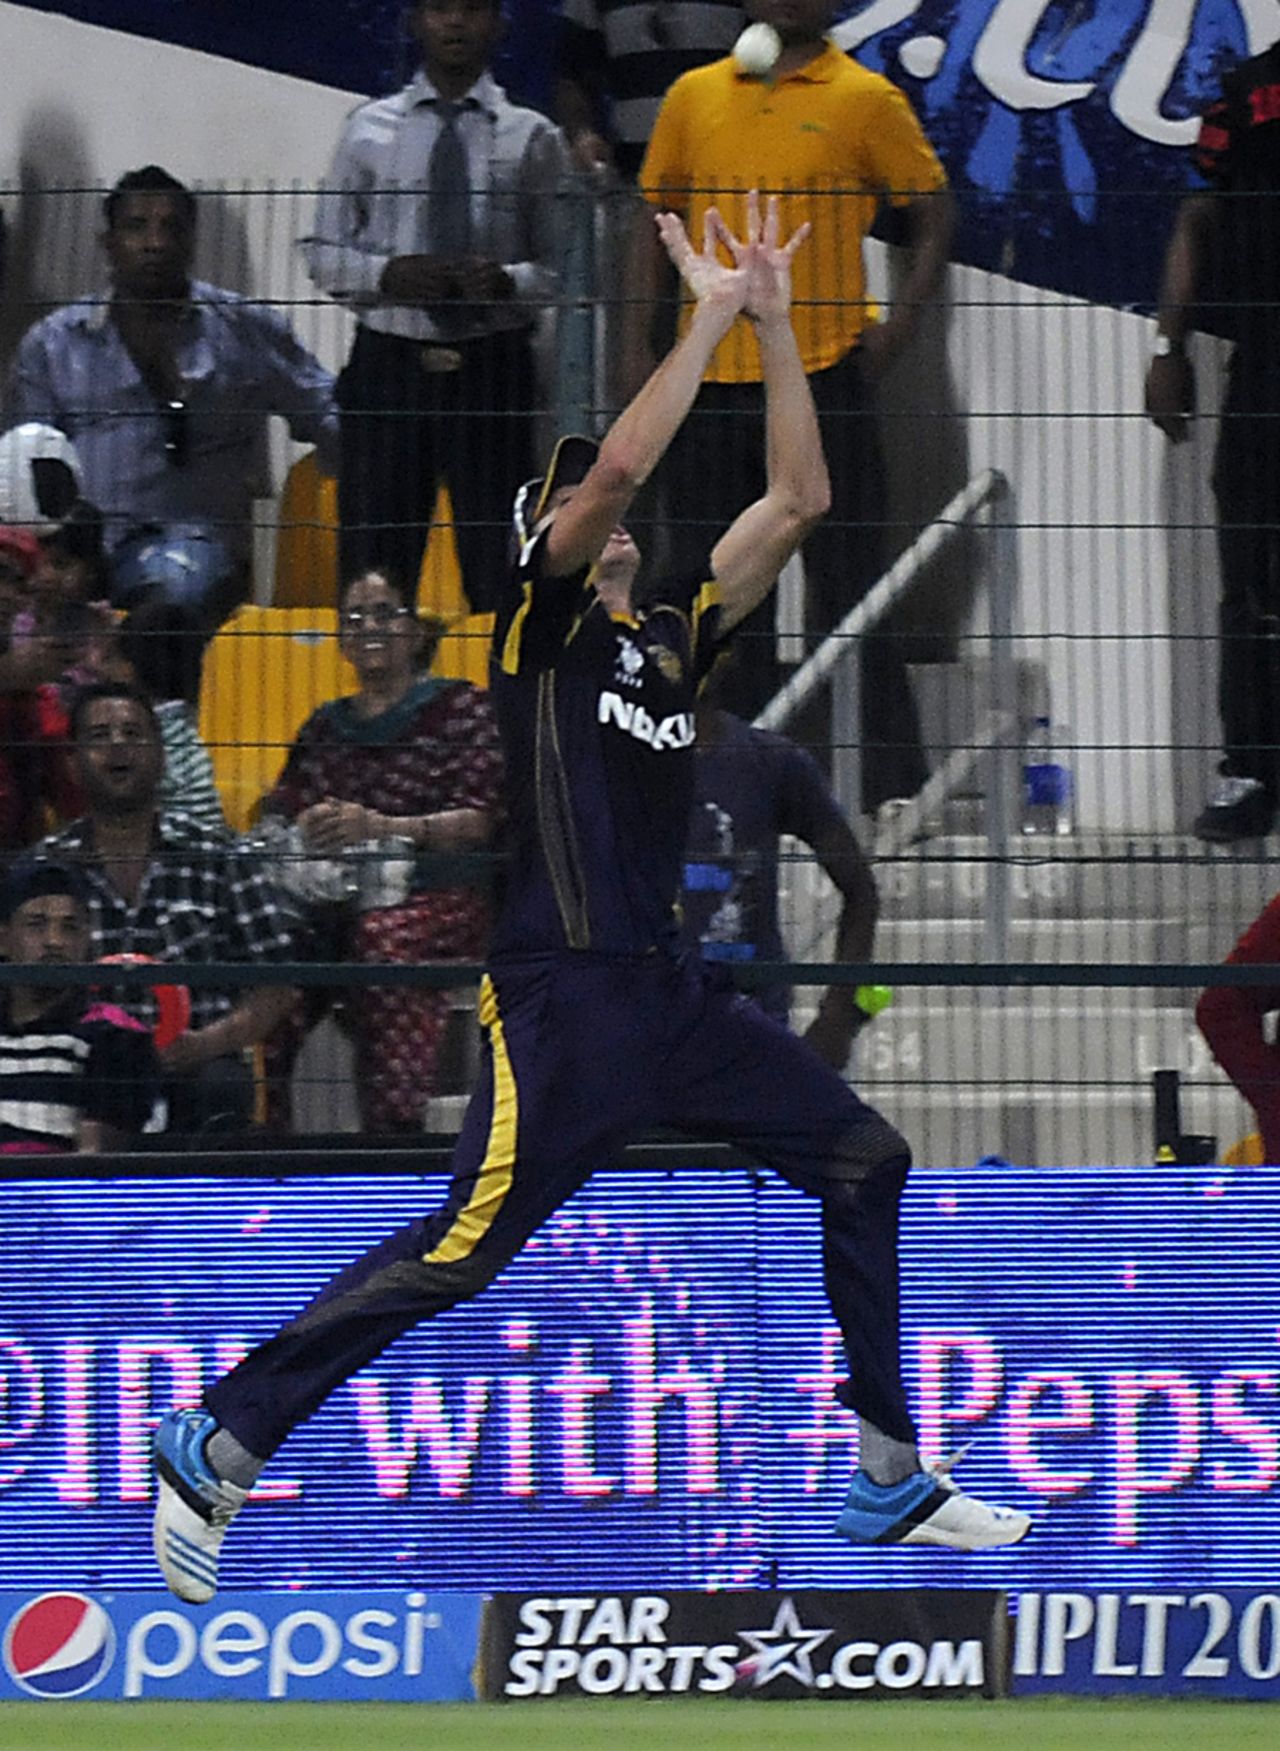 Morne Morkel jumps to take the catch of David Miller, Kolkata Knight Riders v Kings XI Punjab, IPL 2014, Abu Dhabi, April 26, 2014